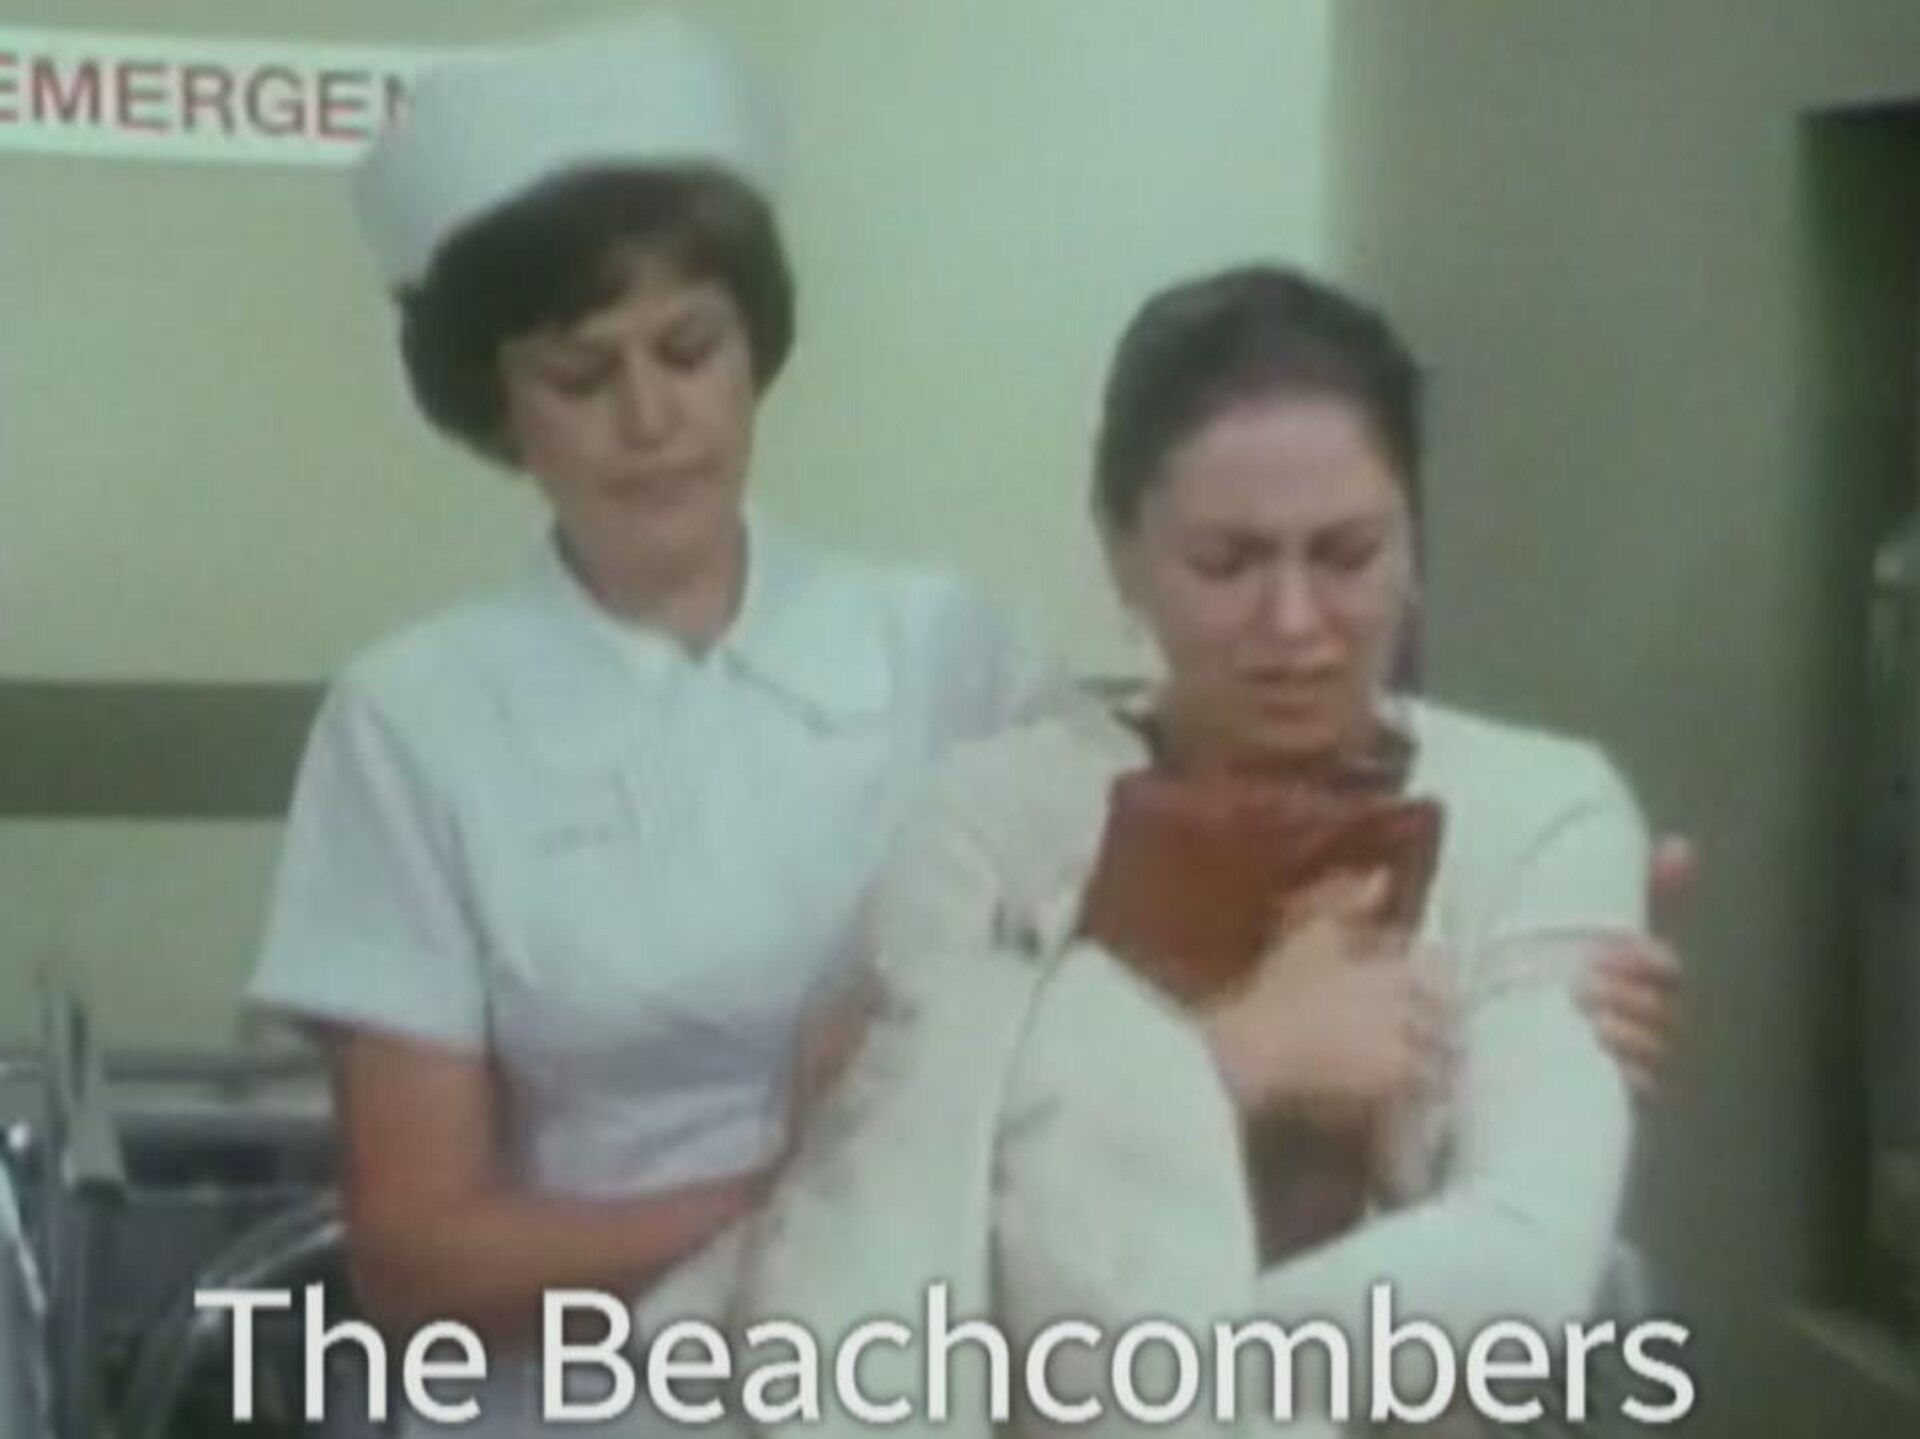 Thérèse Champagne avec une femme habillée en infirmière dans la série « The Beachcombers ».